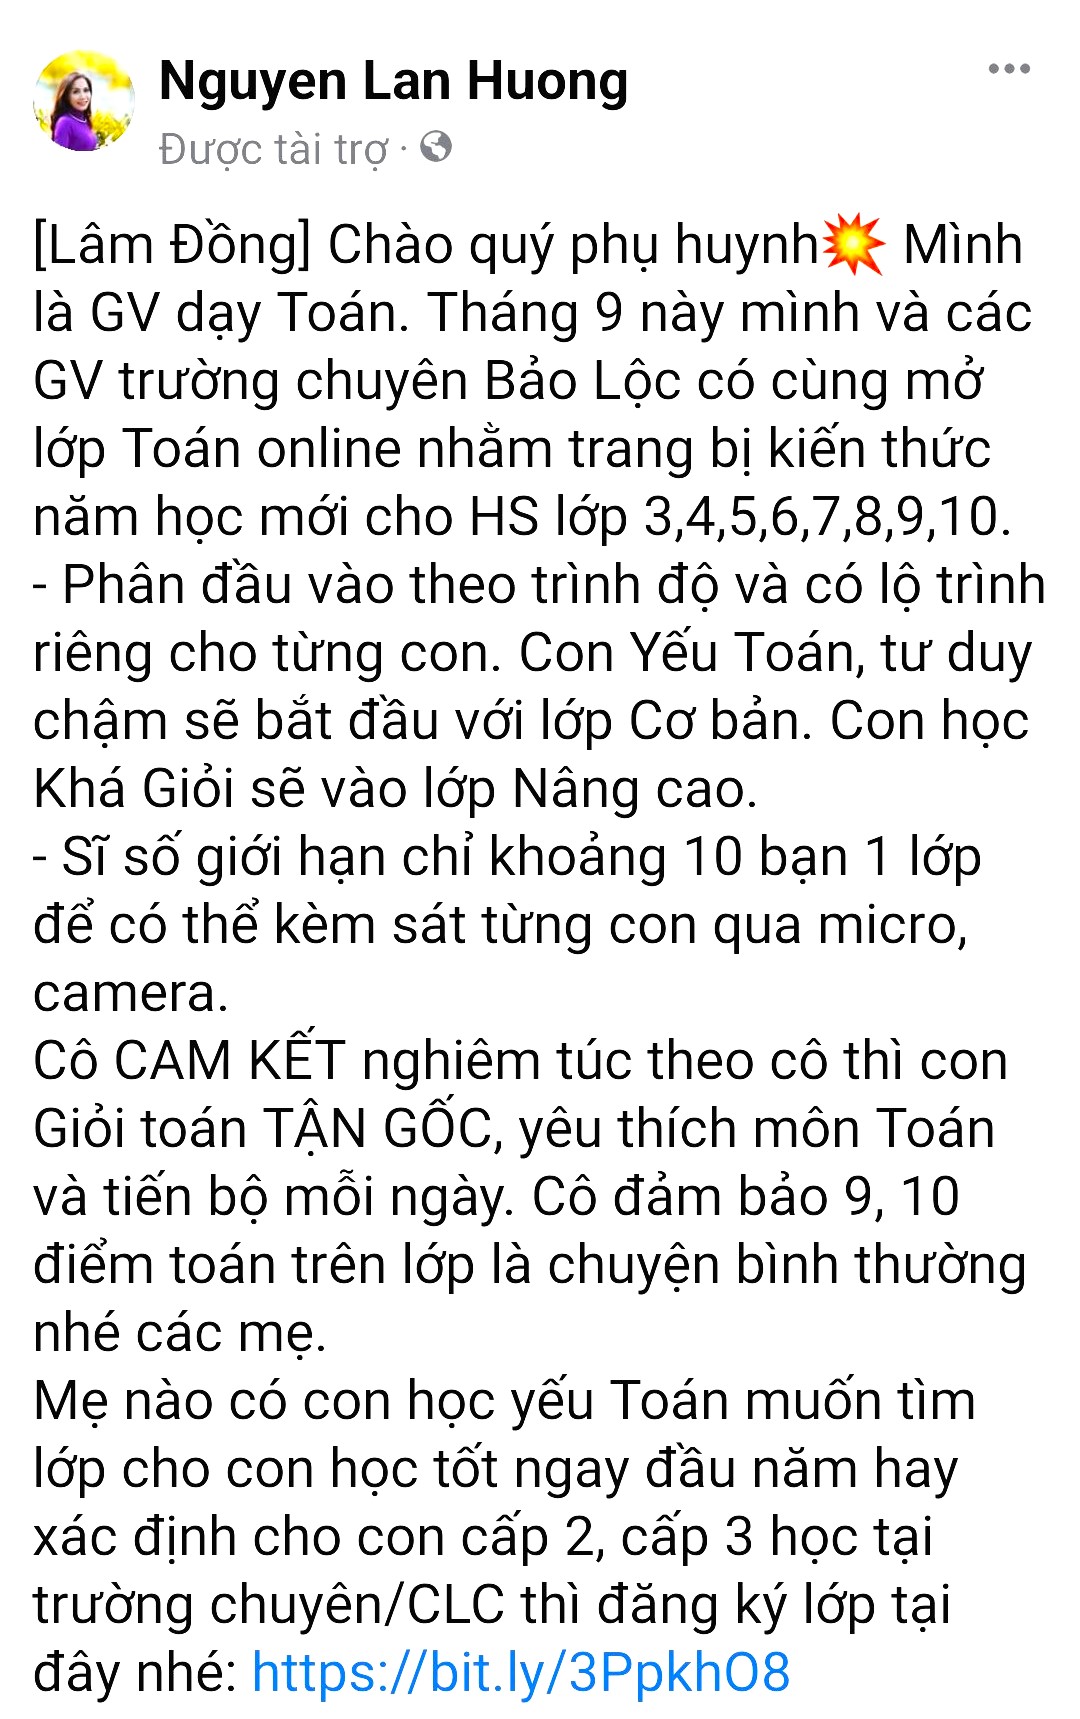 Thôn tin giả mạo liên kết với giáo viên trường THPT Chuyên Bảo Lộc mà tài khoản facebook  Nguyen Lan Huong đăng tải để mời gọi phụ huynh, học sinh đăng ký học toán online